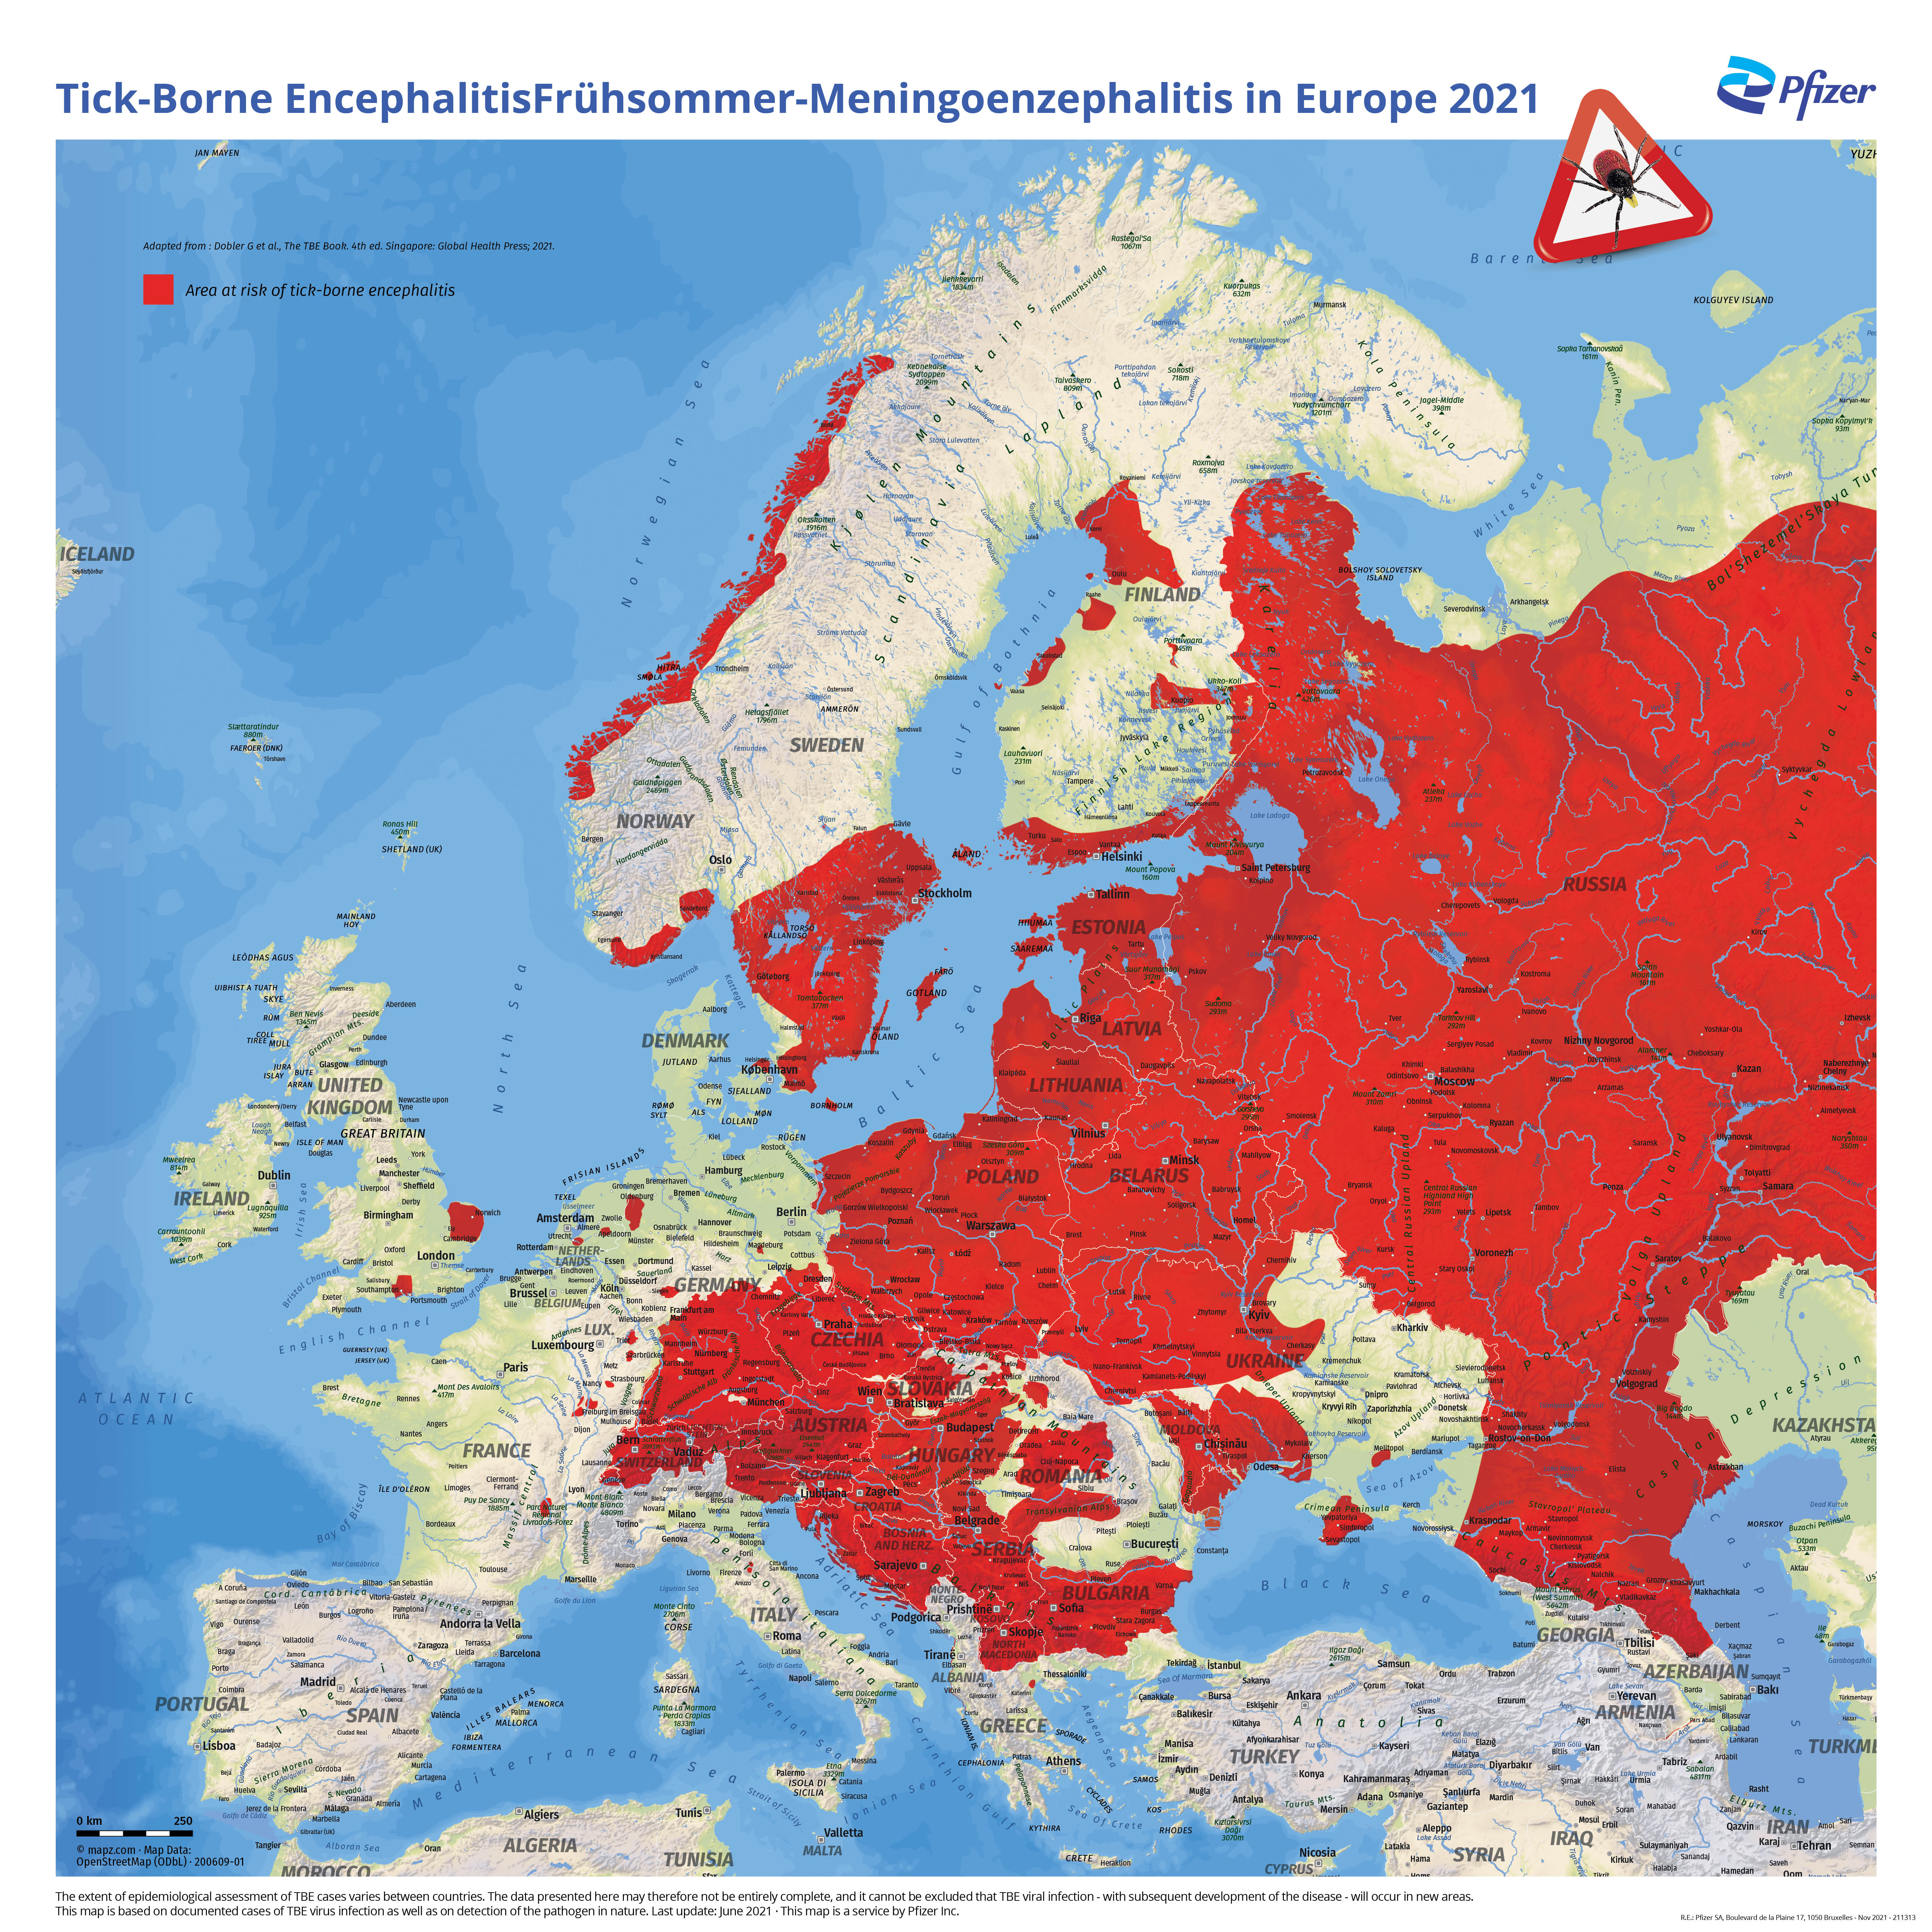 Kaart waarin het verspreidingsgebied van tekenencefalitis in Europa rood is ingekleurd.